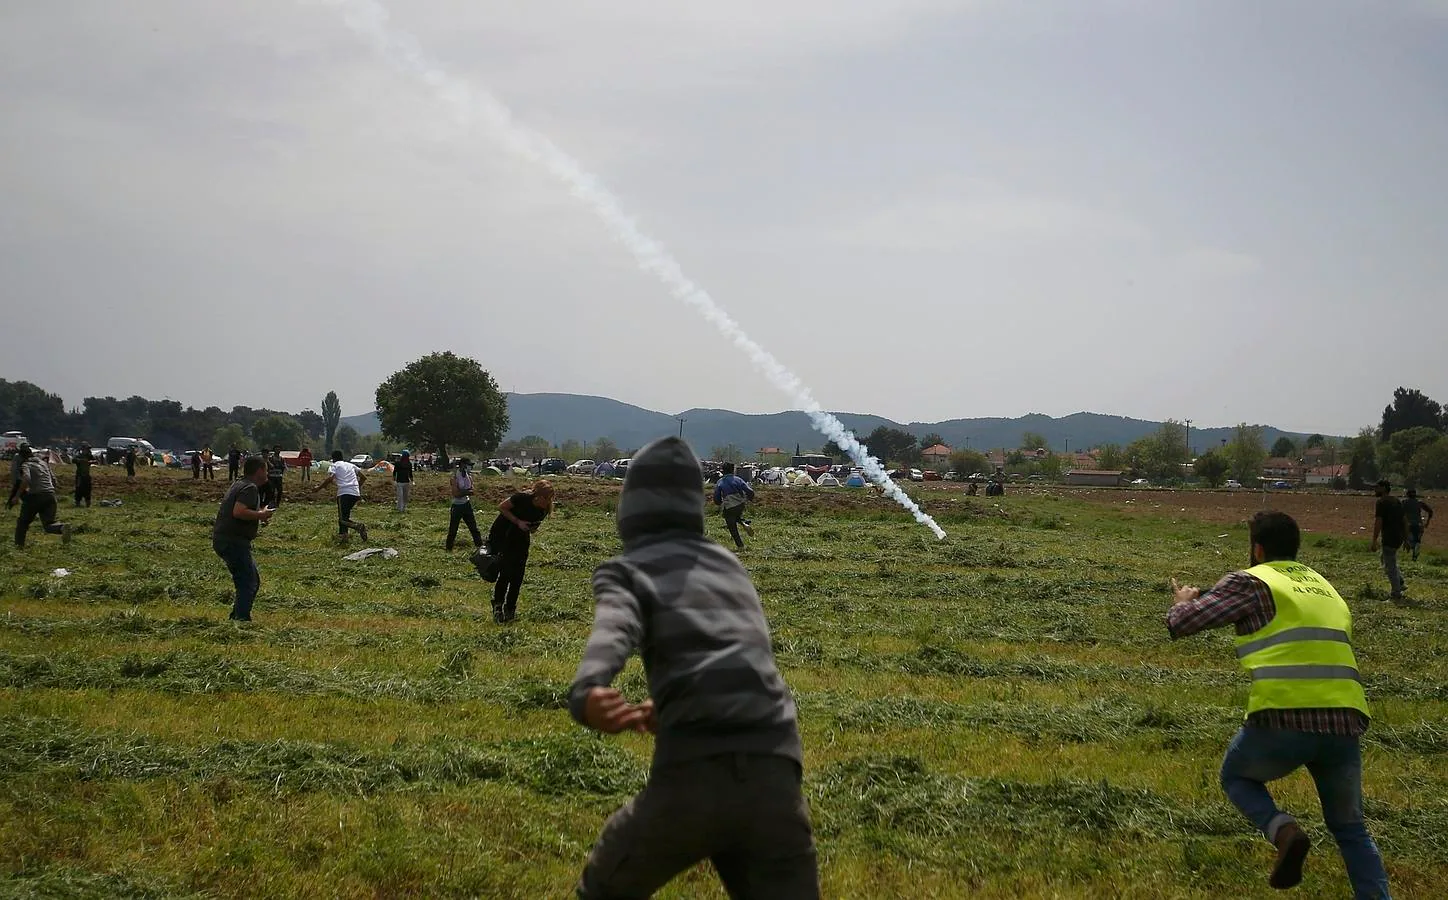 Poco antes de los enfrentamientos la Policía griega detuvo a una persona en los alrededores del campamento que portaba un aerosol de gas pimienta